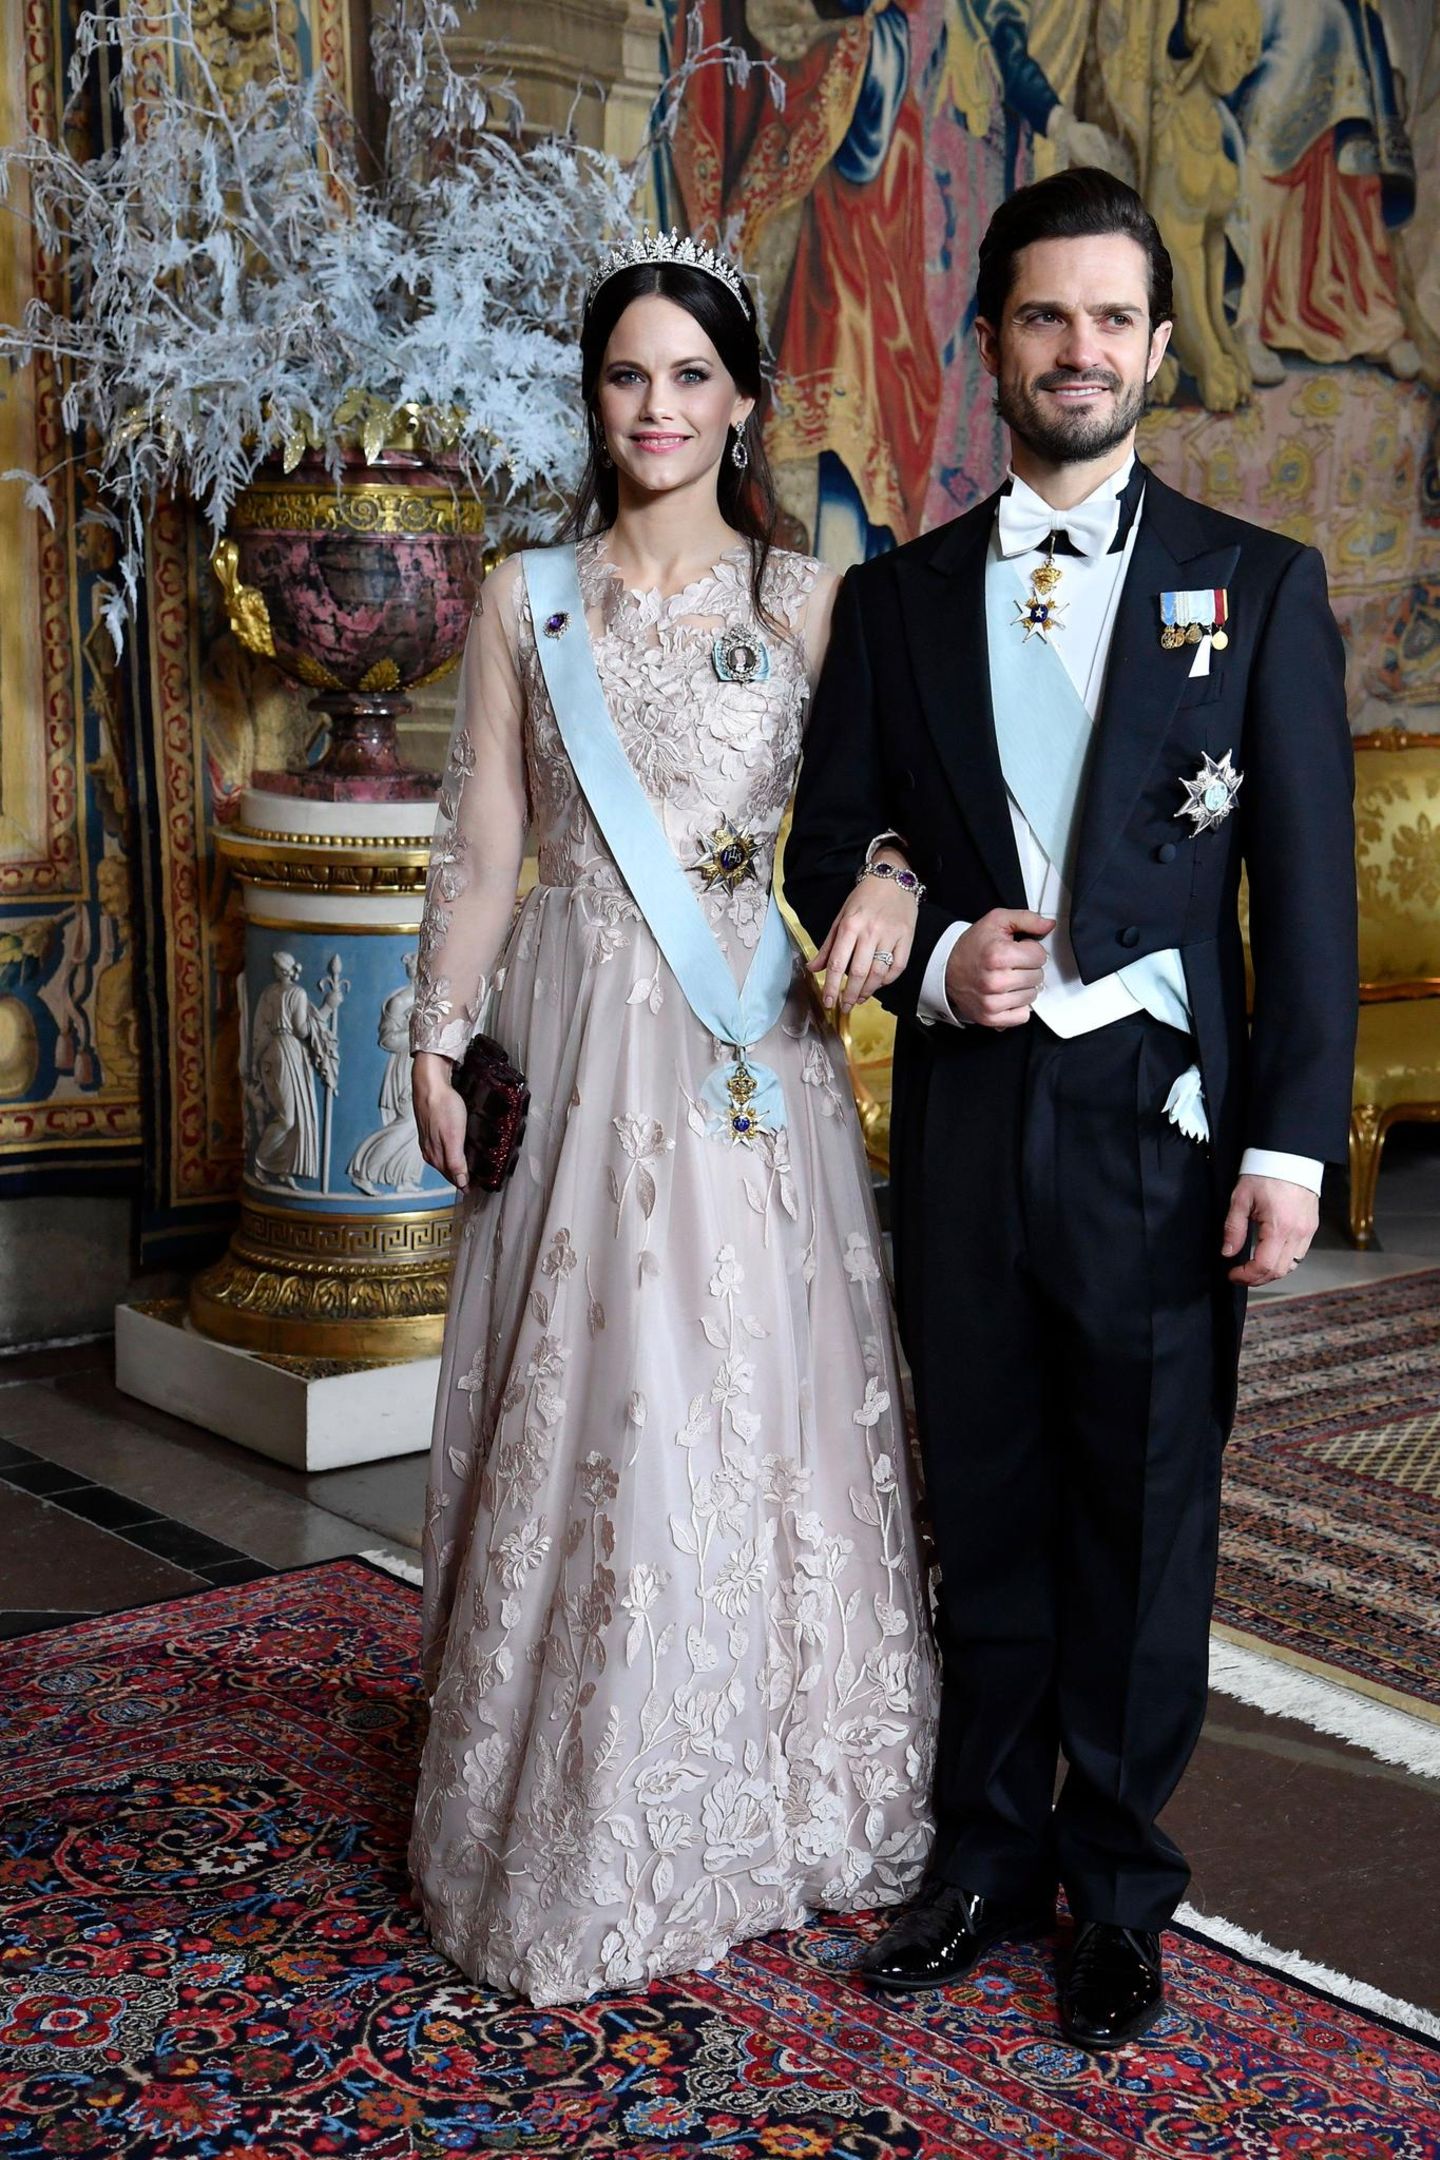 Beim Königsdinner zu Ehren der Nobelpreisträger im Schloss zeigt sich Prinzessin Sofia in einer blassrosa Traumrobe mit Blütenstickereien. Ihr dunkelbraunes Haar trägt sie halb hochgesteckt. 